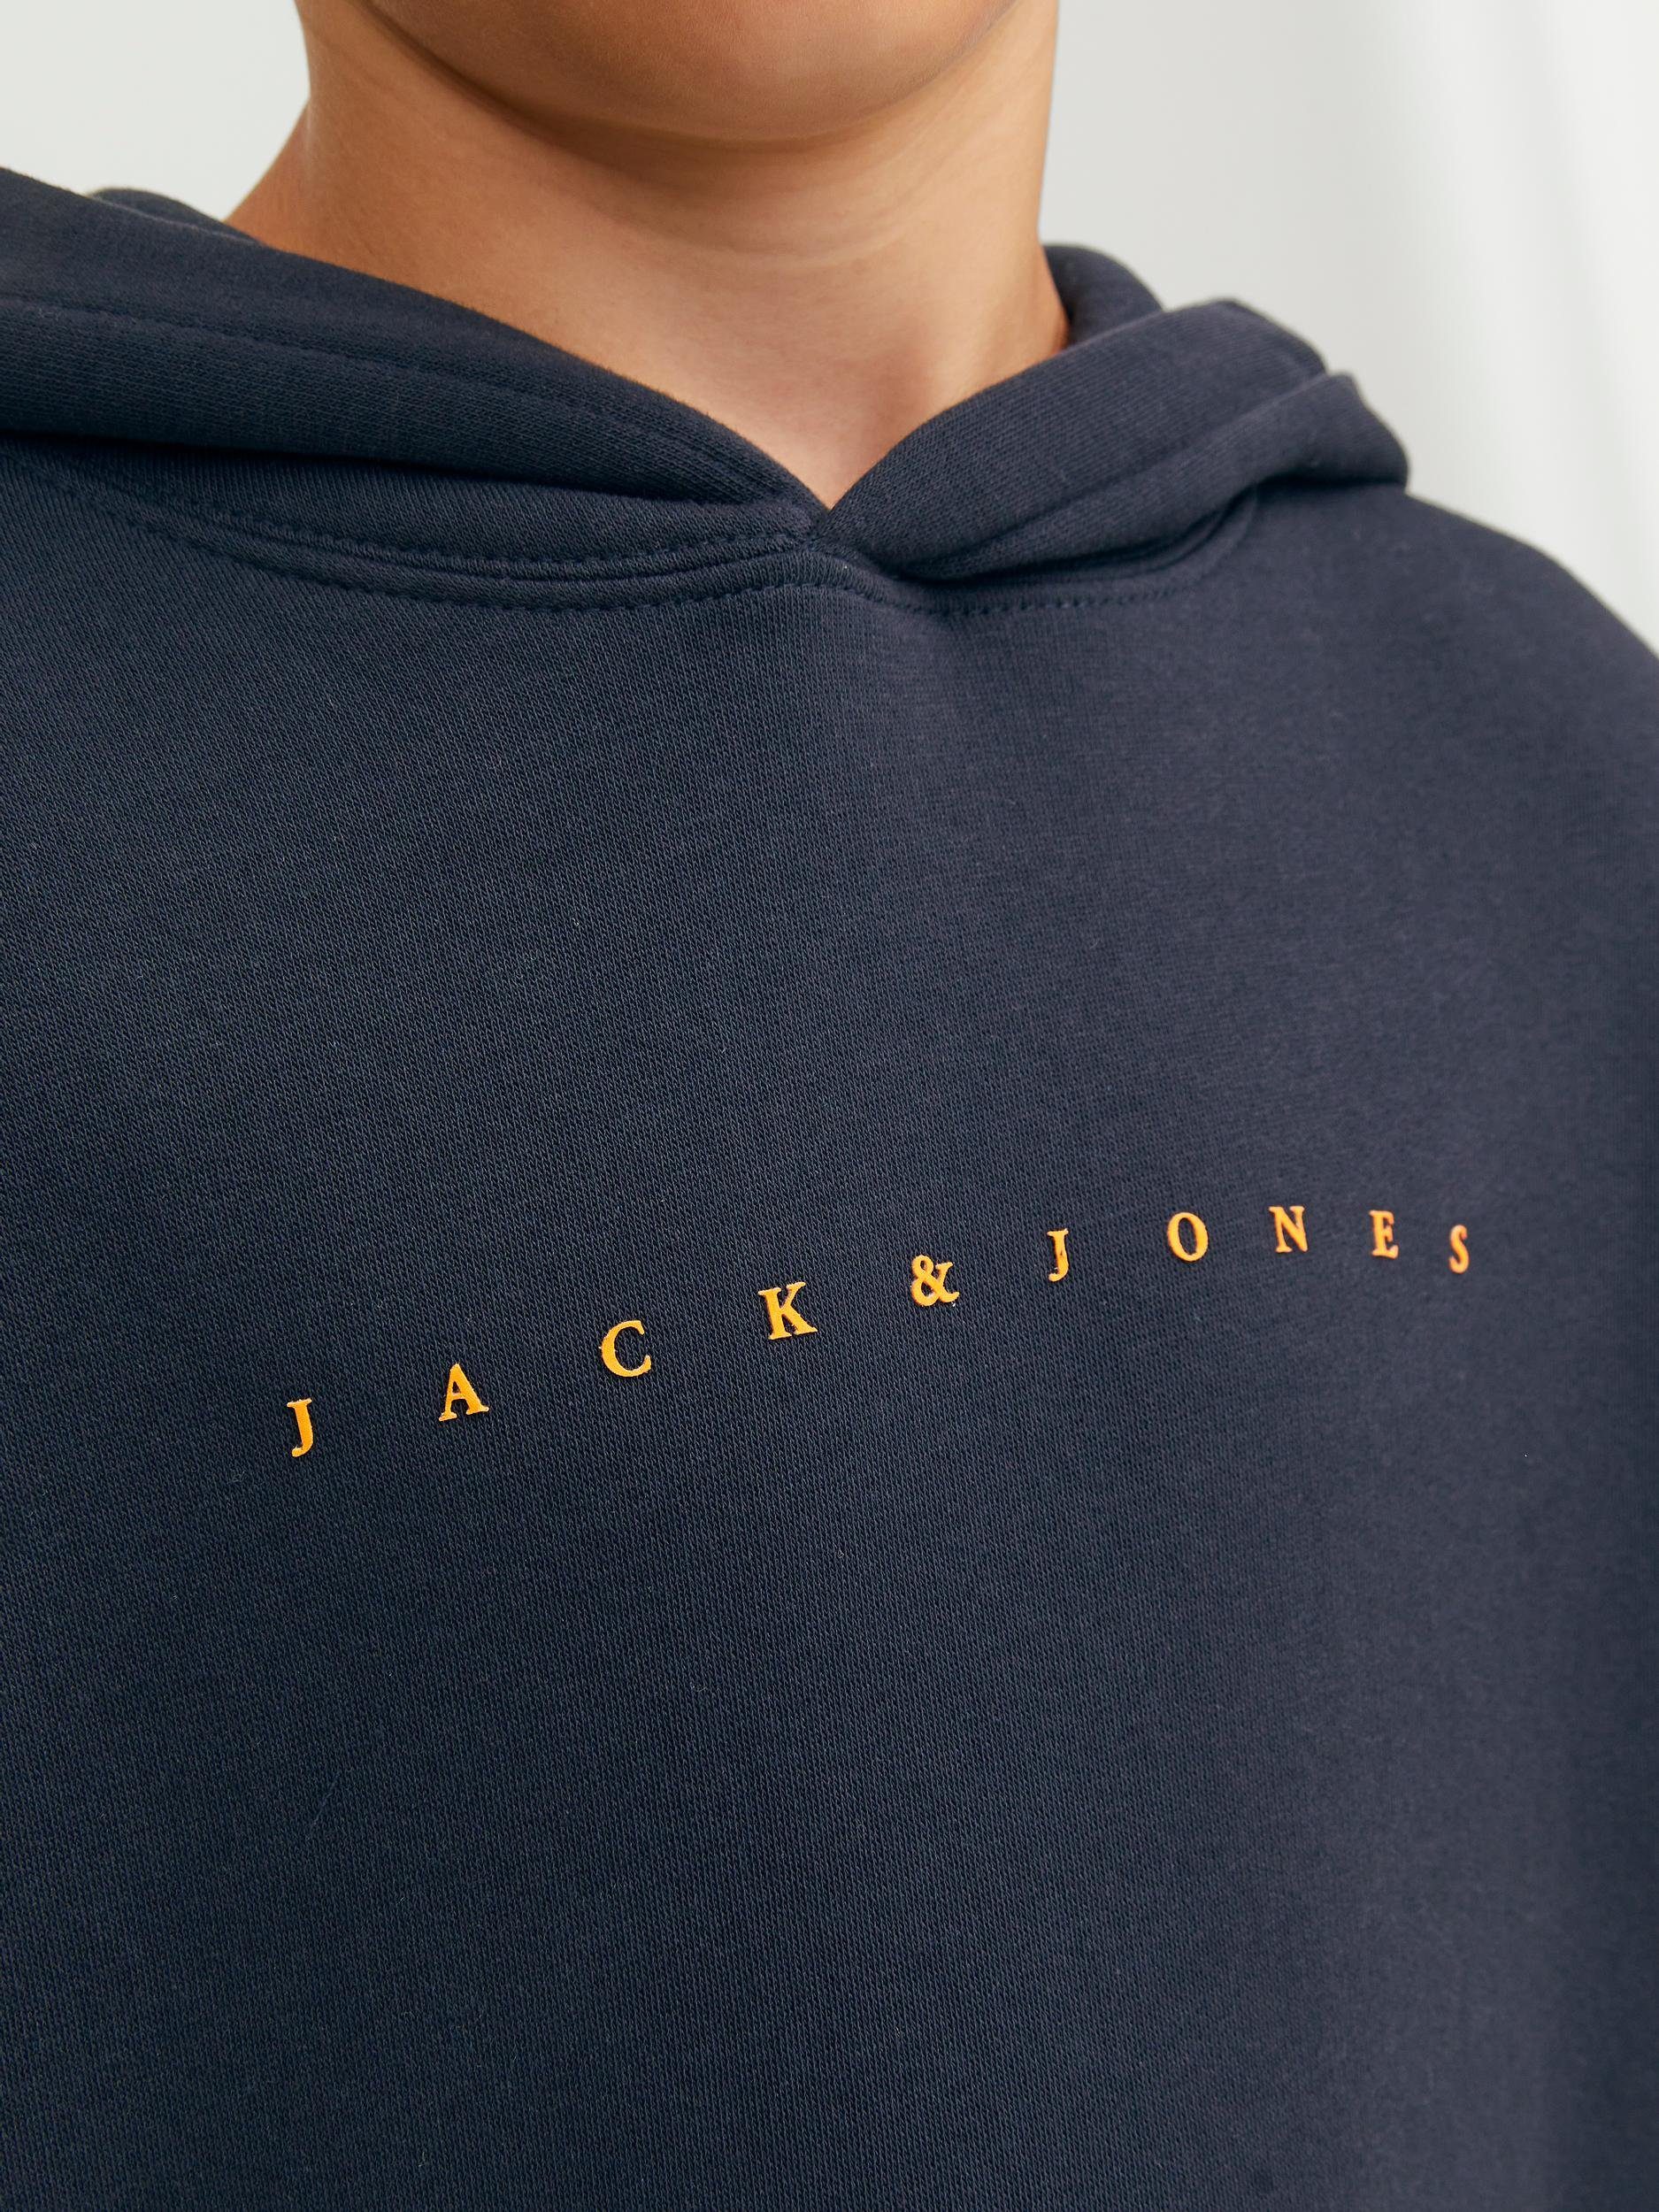 Jack & Jones Sweatshirt Dark Navy/LOOSE